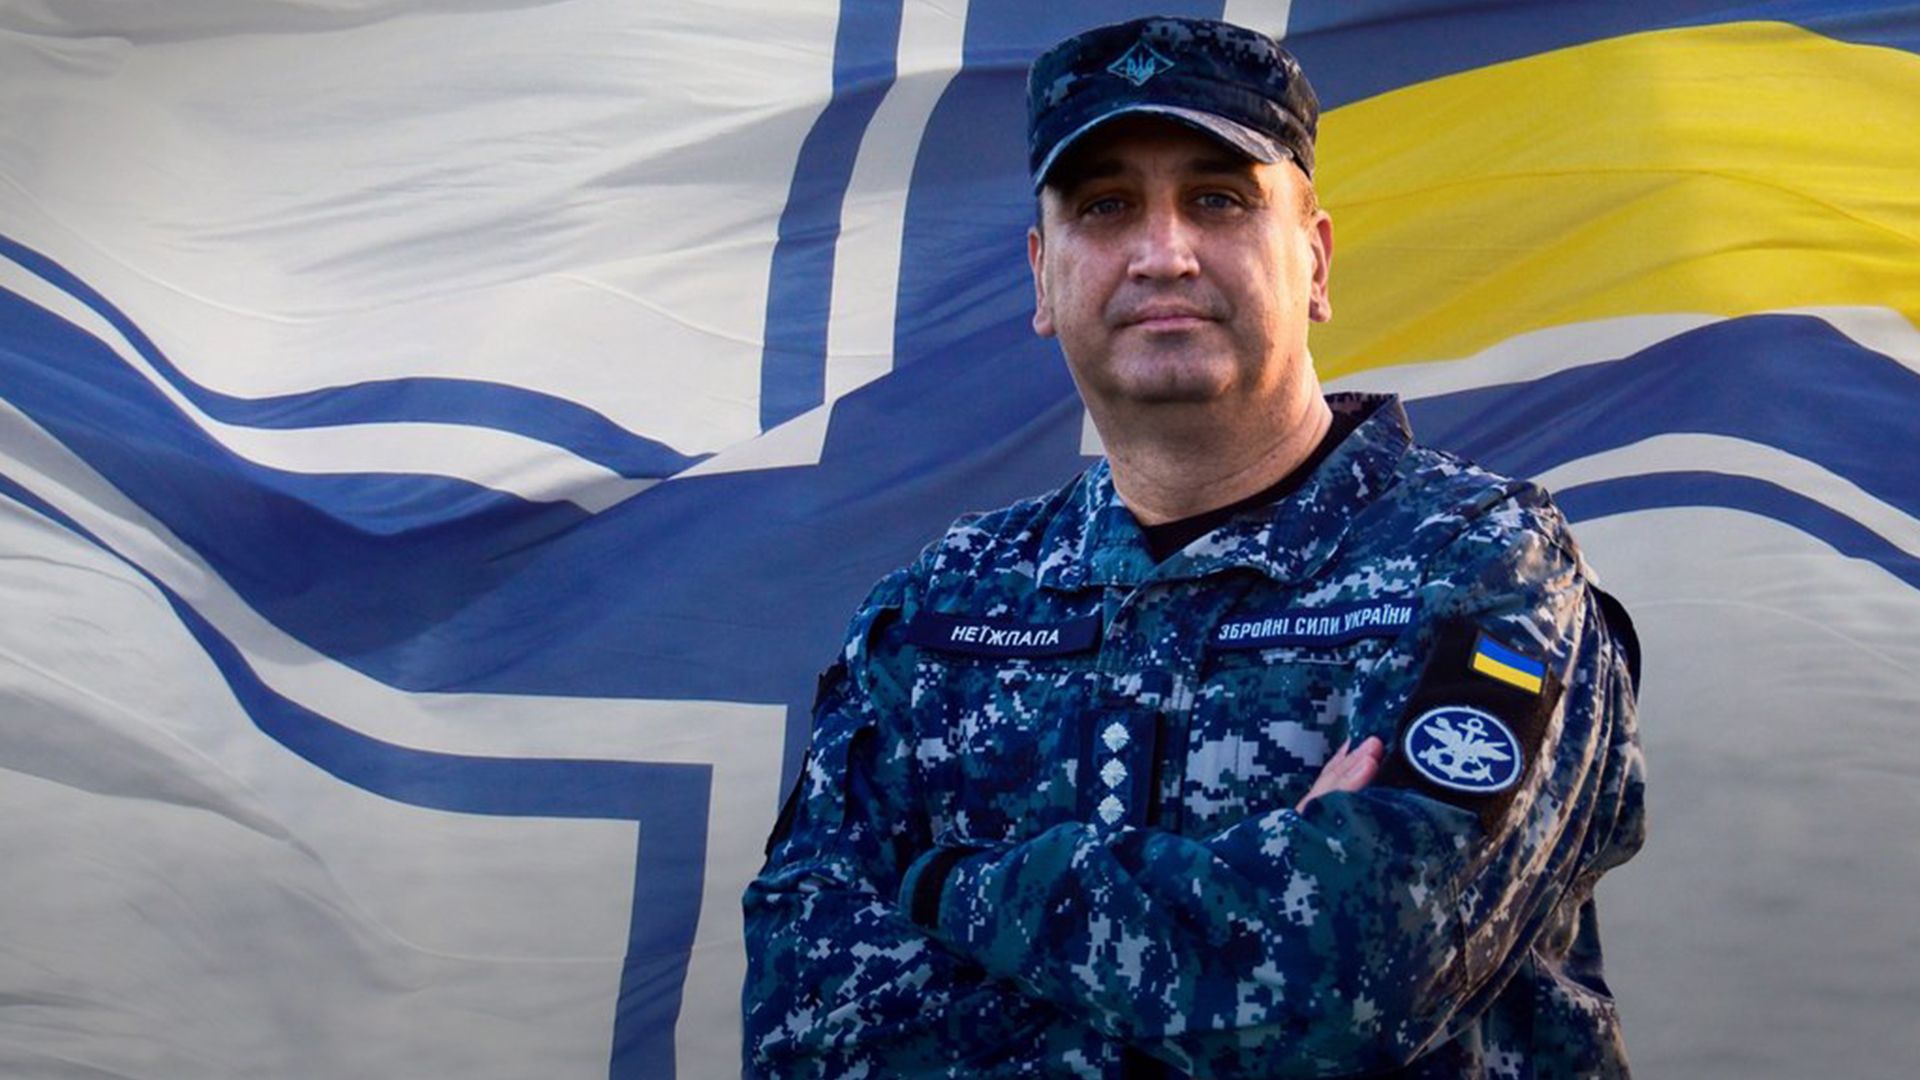 Как командующий ВМС узнал о полномасштабном вторжении России - 24 Канал